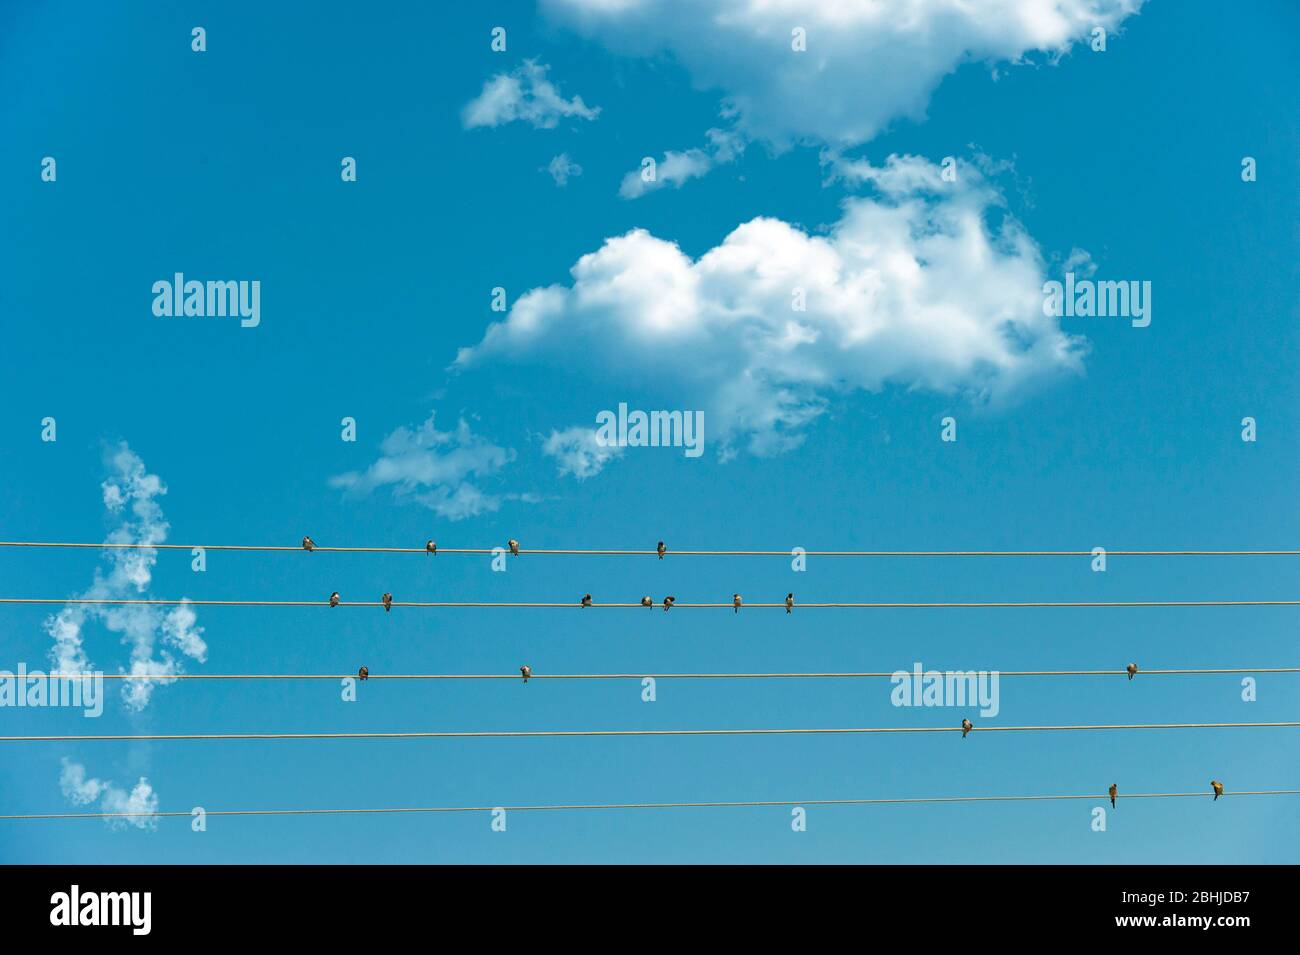 Une image conceptuelle de la musique, faite par swwulds sur des fils télégraphiques et une bande d'aigus faite de nuages Banque D'Images